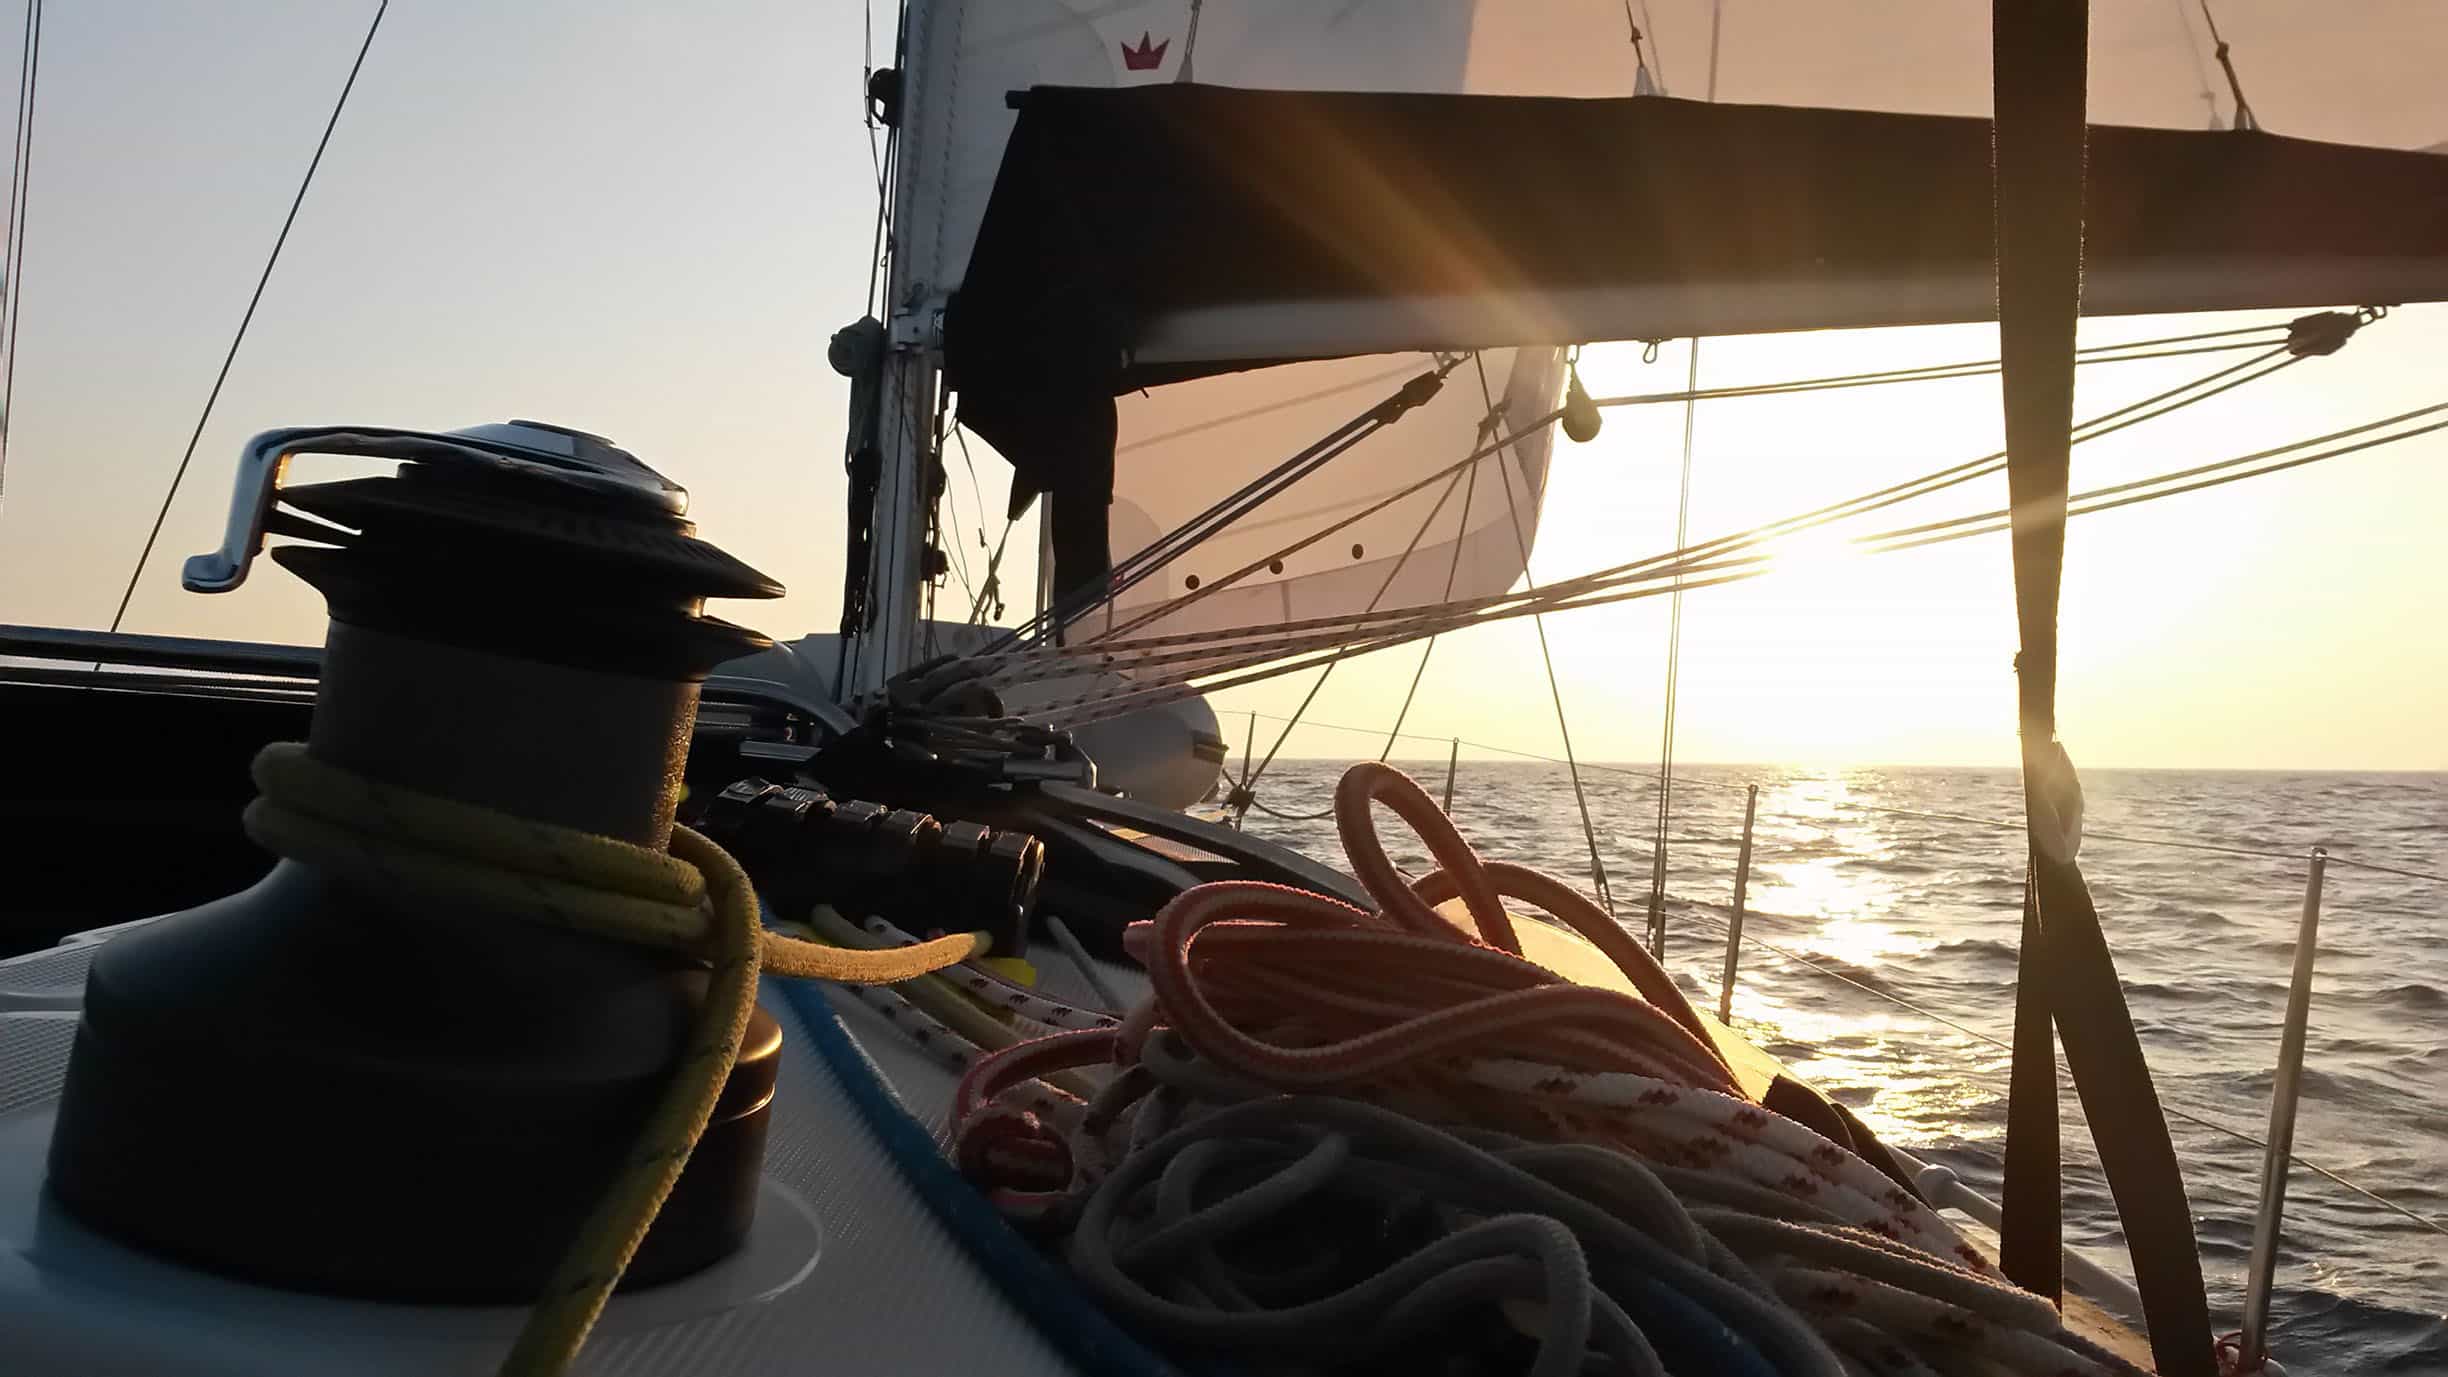 Eine Nahaufnahme des Decks eines Segelboots bei Sonnenuntergang. Zu sehen sind eine Winde mit aufgerollten Seilen und das Großsegel, das während eines Segeltörns vor einem warmen, glühenden Himmel entrollt ist.